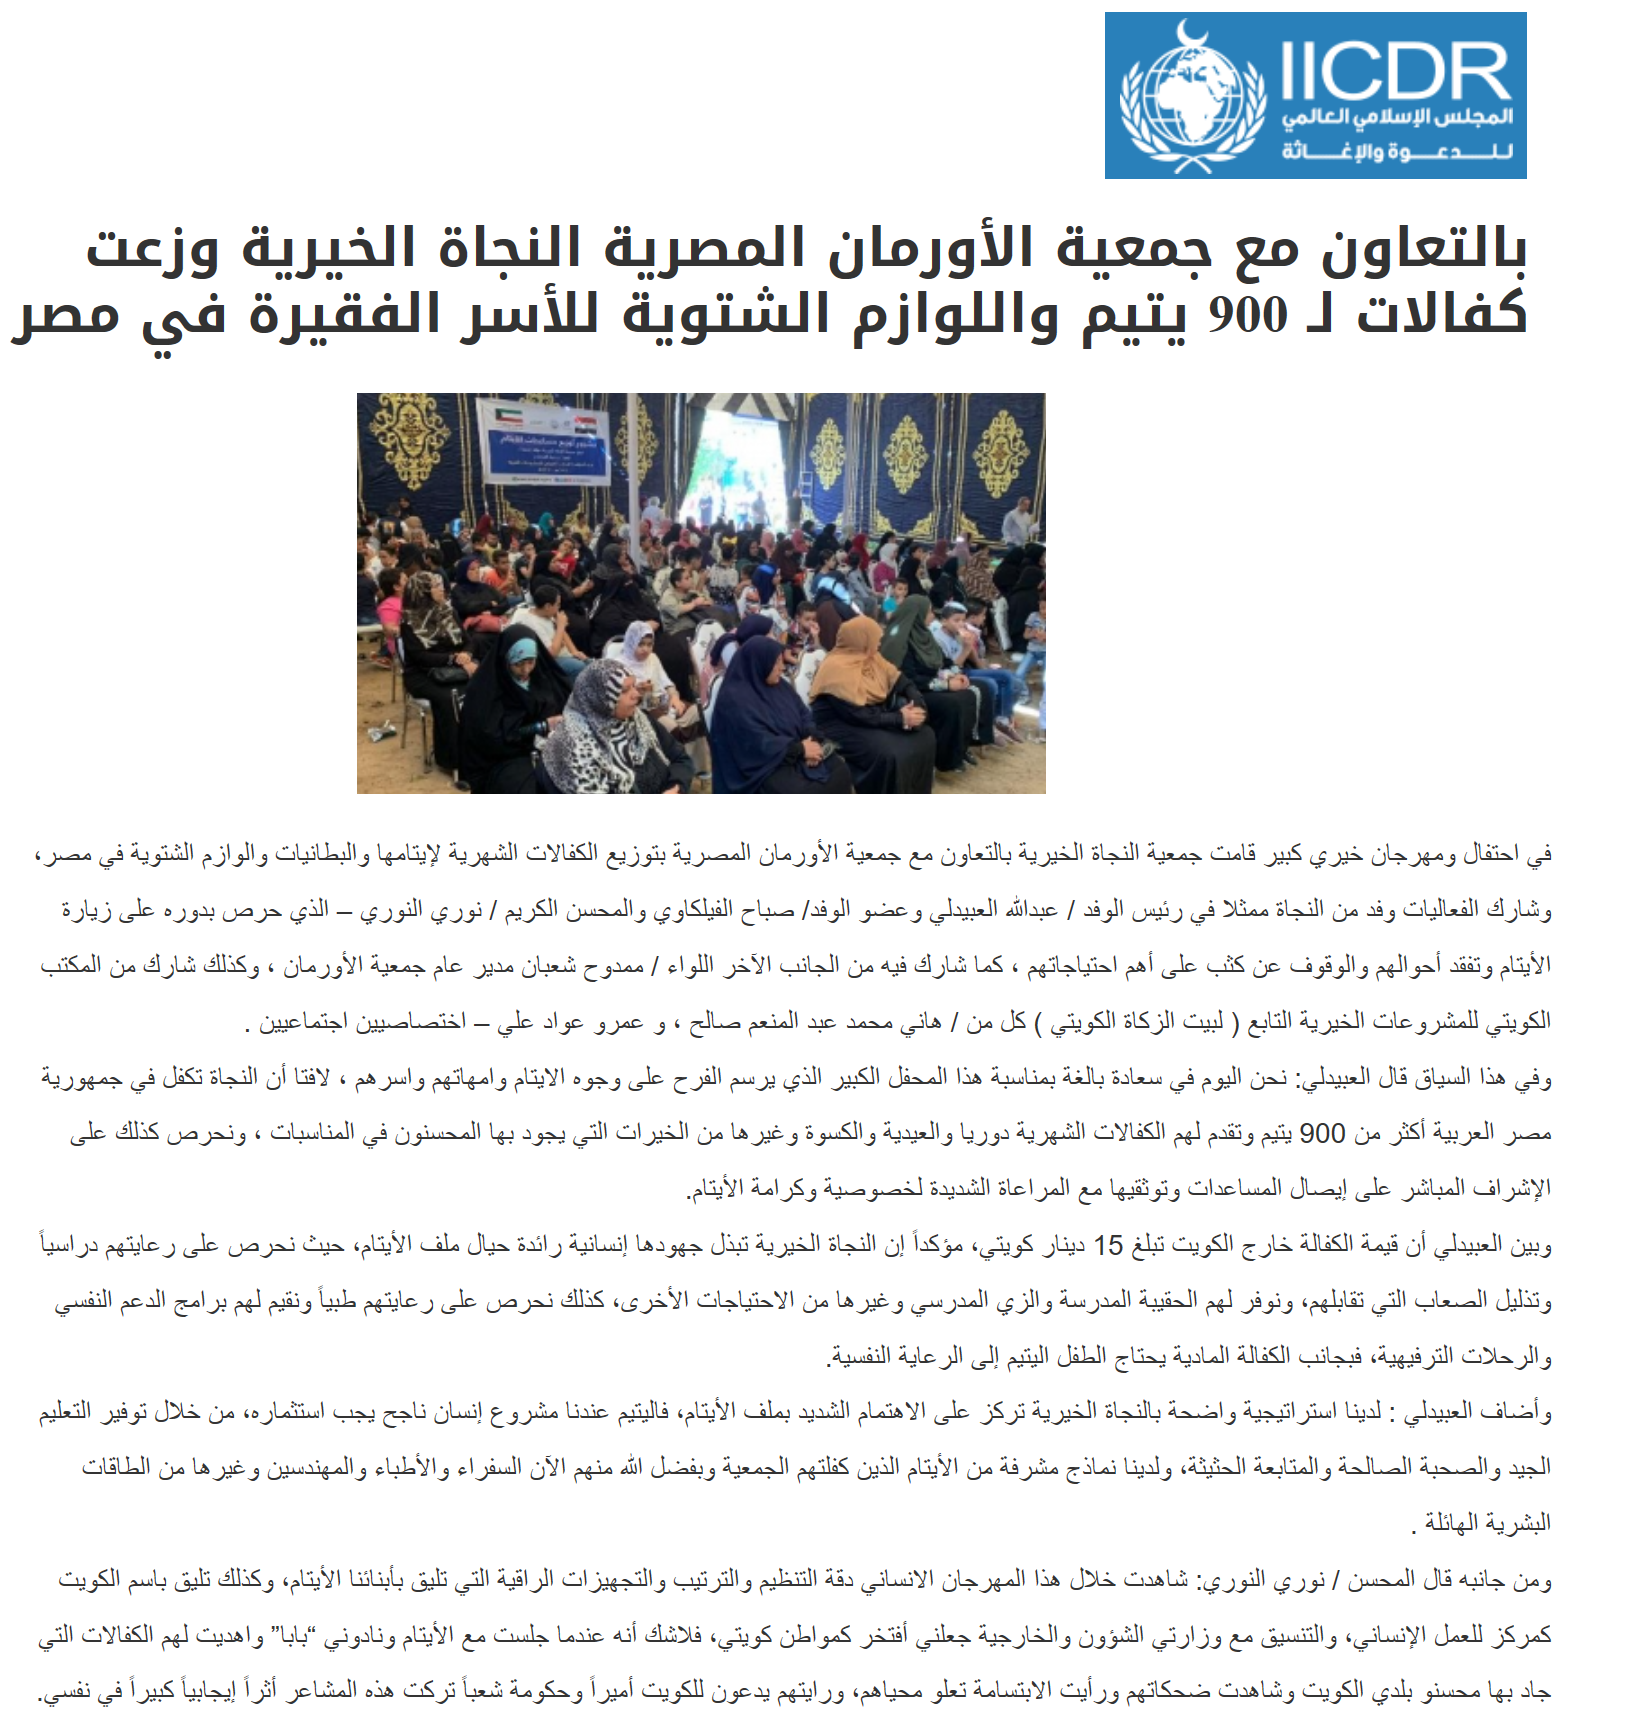 بالتعاون مع جمعية الأورمان المصرية النجاة الخيرية وزعت كفالات لـ 900 يتيم واللوازم الشتوية للأسر الفقيرة في مصر